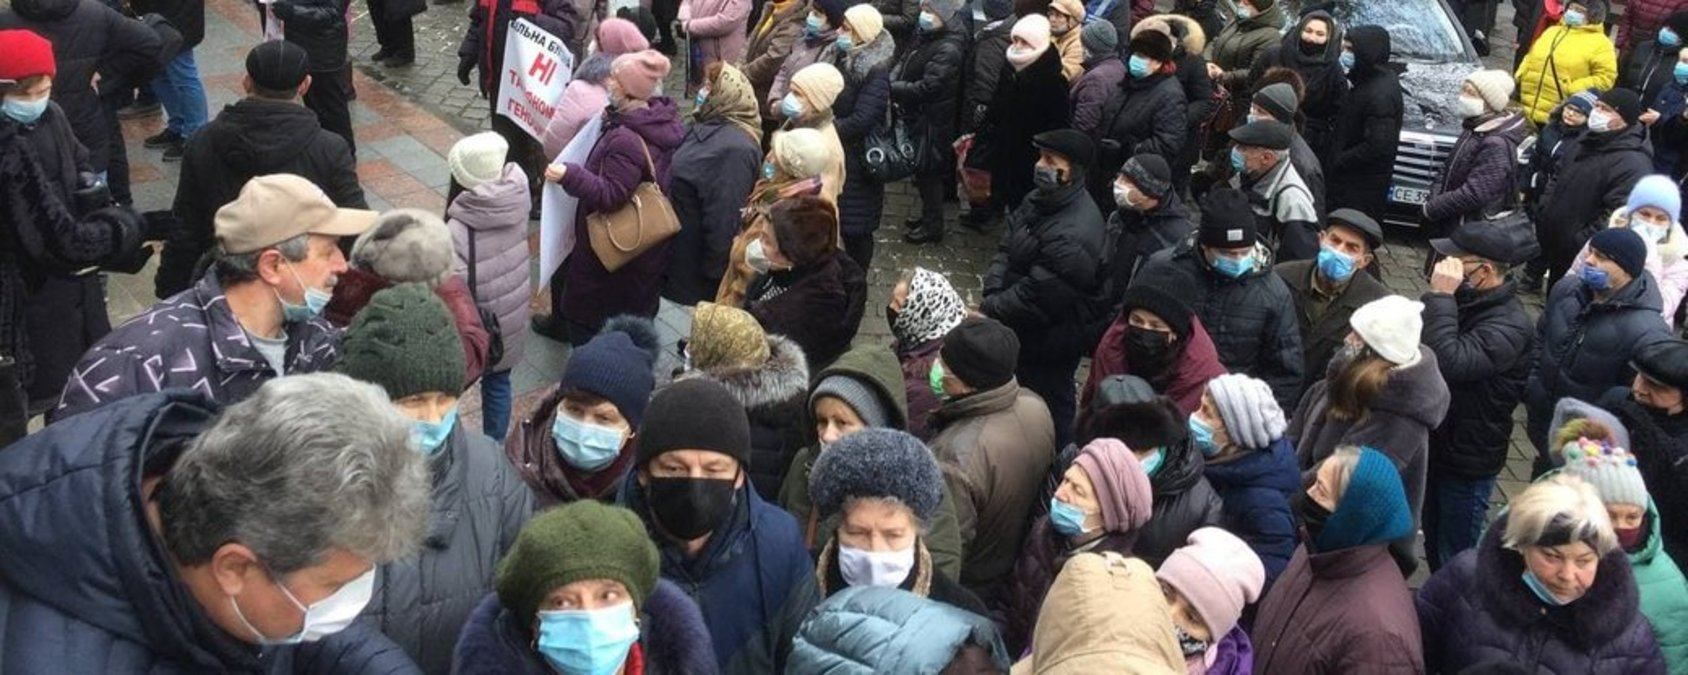 У Чернівцях 12 січня 2021 протестують через локдаун і тарифи на газ